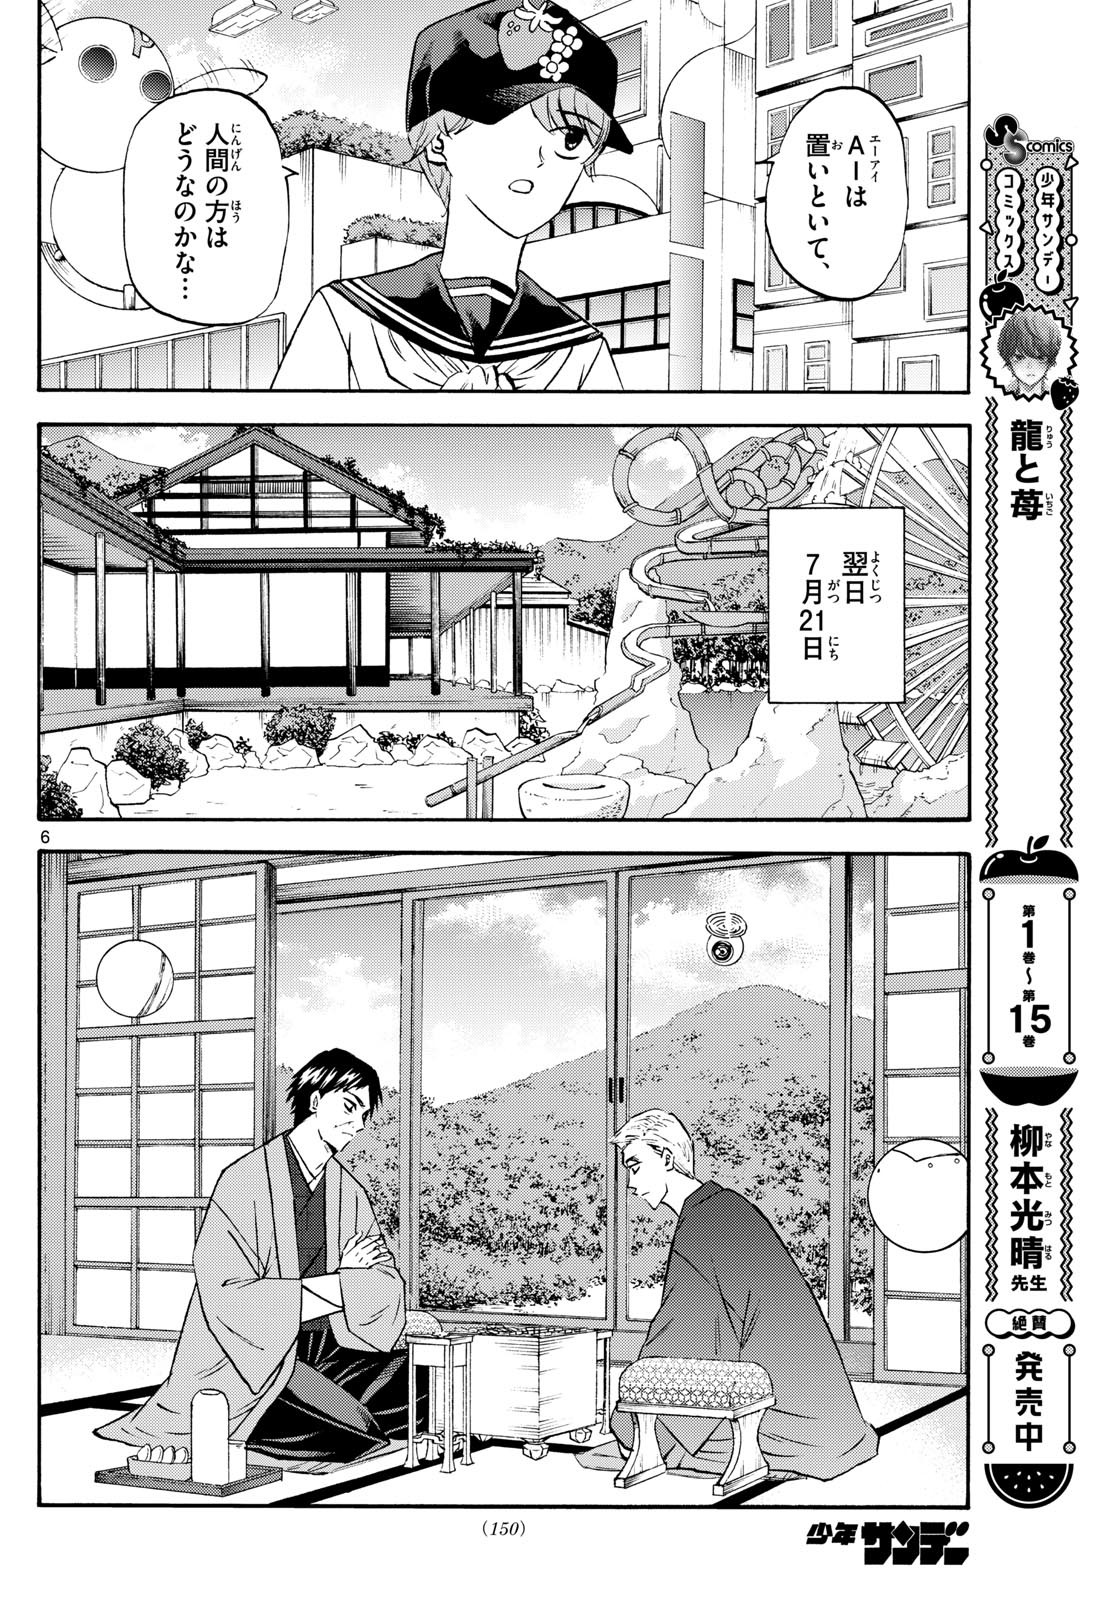 Ryu-to-Ichigo - Chapter 195 - Page 6